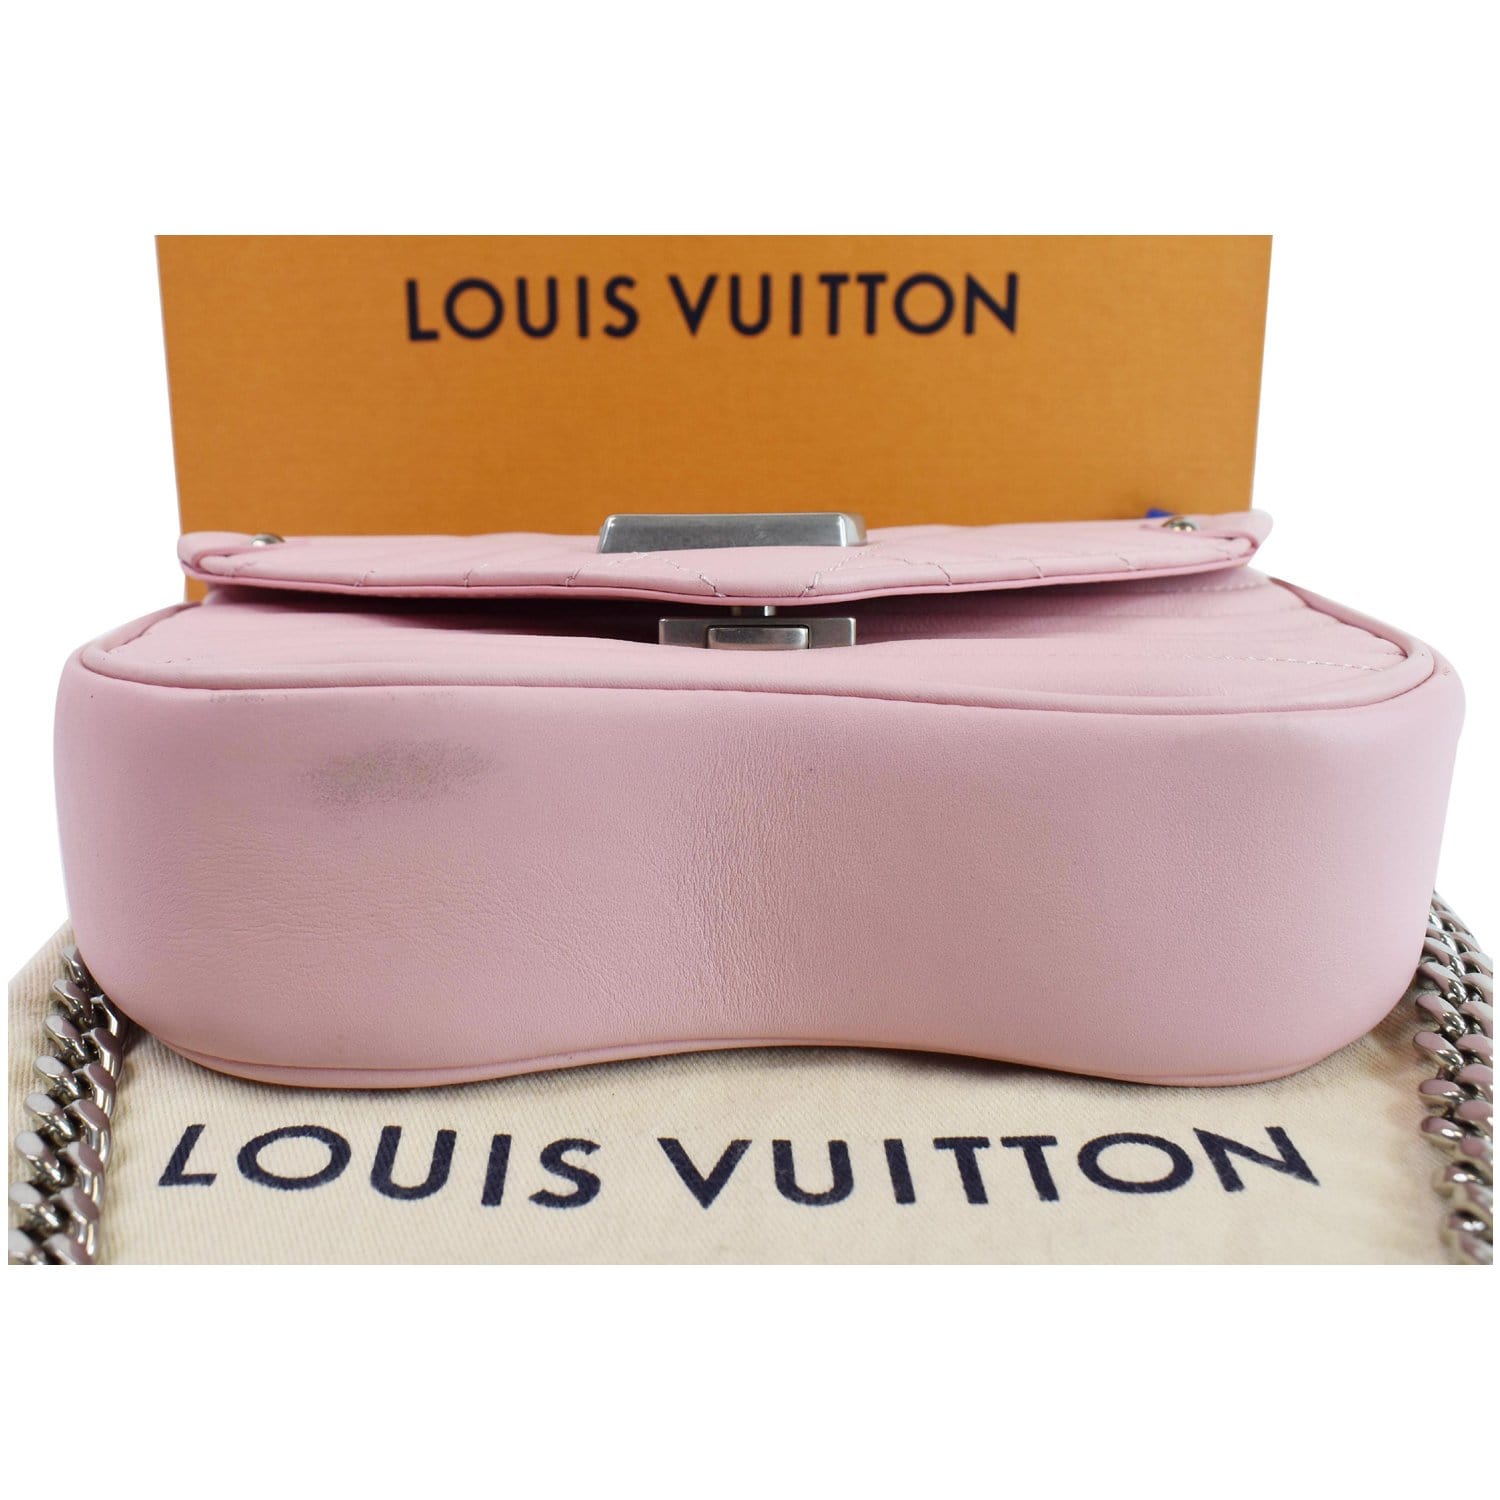 Pin on Louis Vuitton Bag